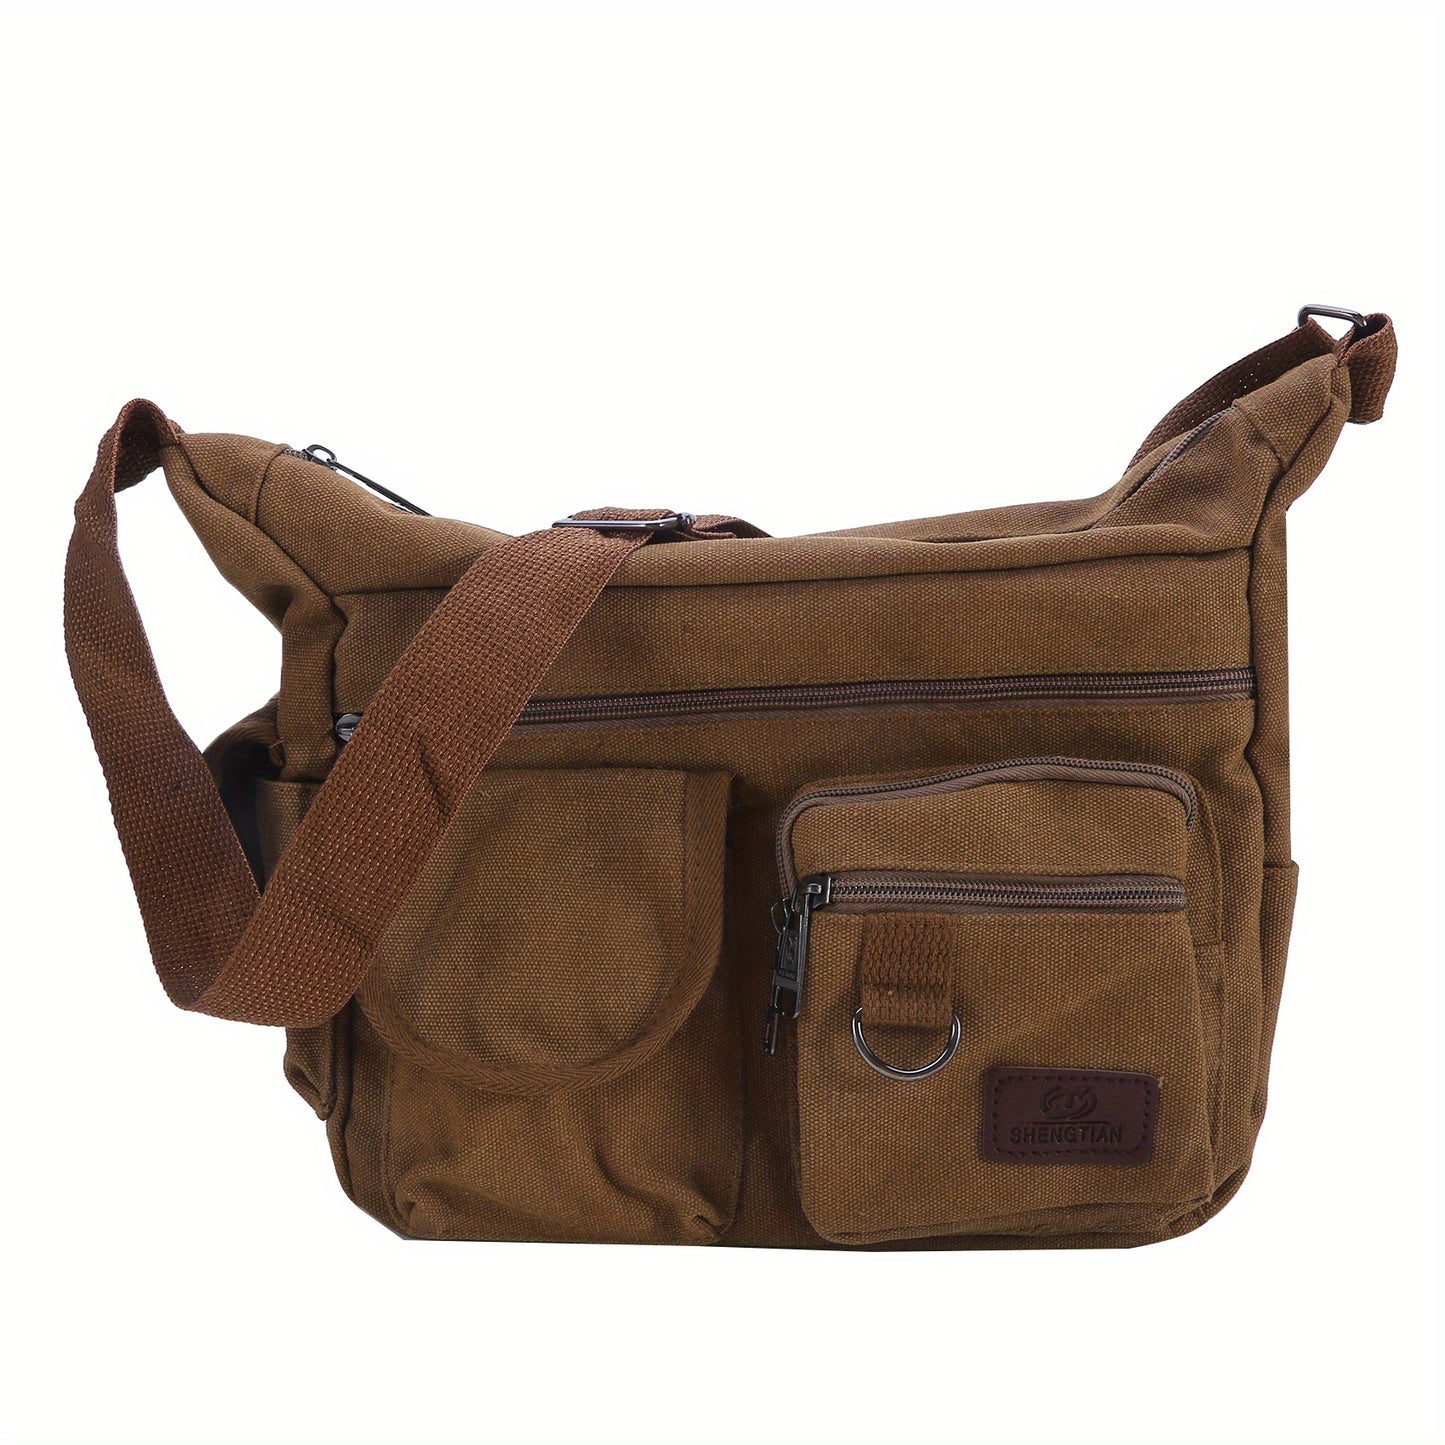 Men's Shoulder Bag New Canvas Large Capacity Shoulder Bag Multi-pocket Messenger Bag For Student Travel Casual Bag